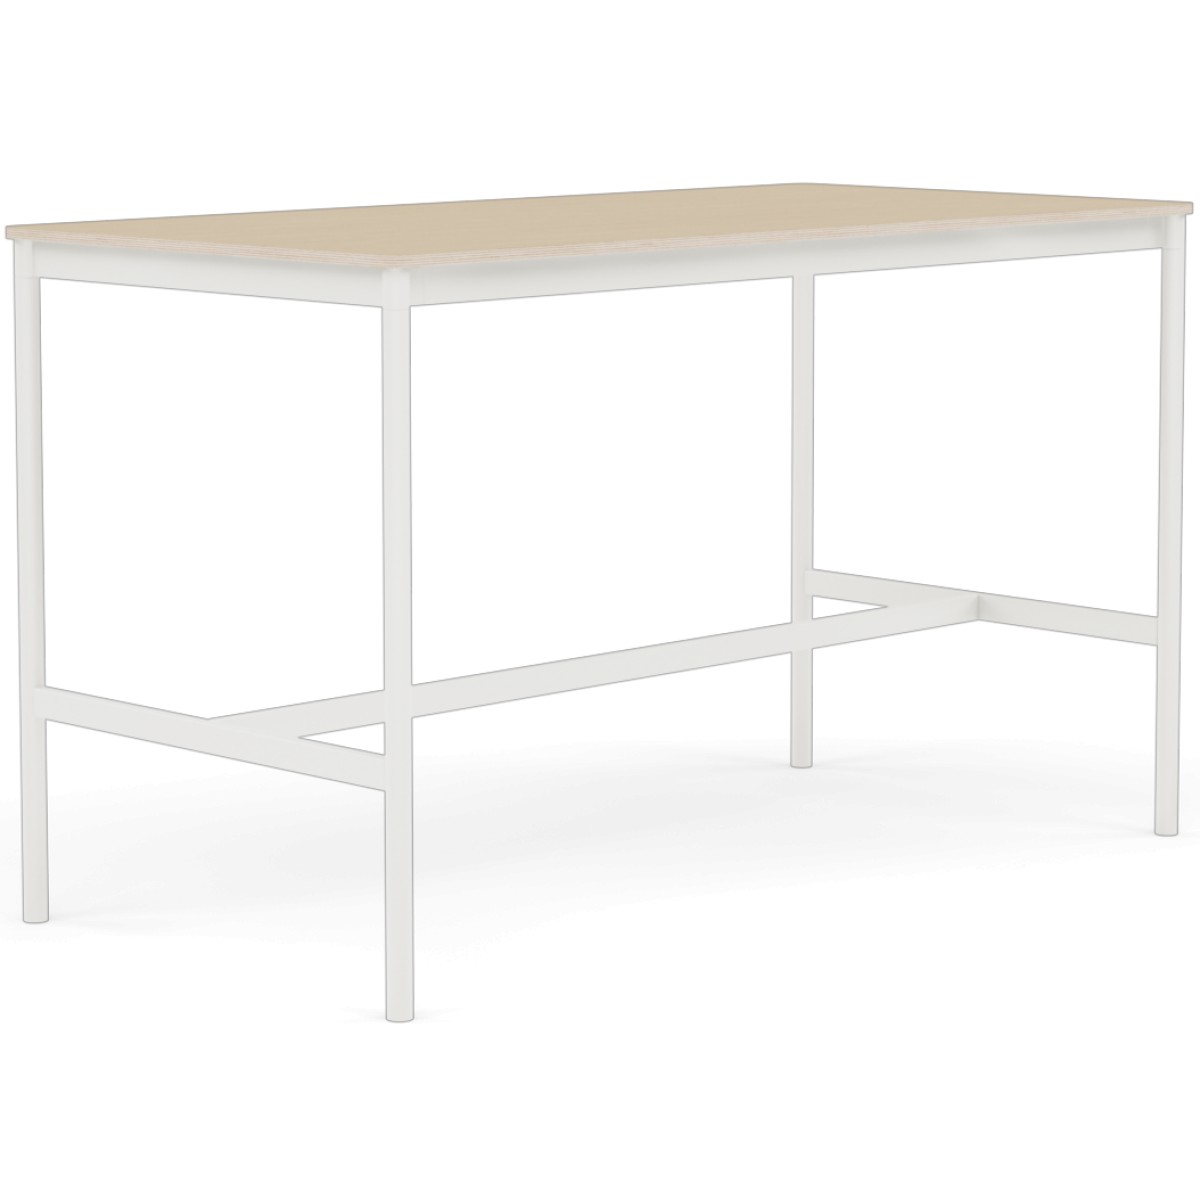 Base High Table / 160 x 80 cm